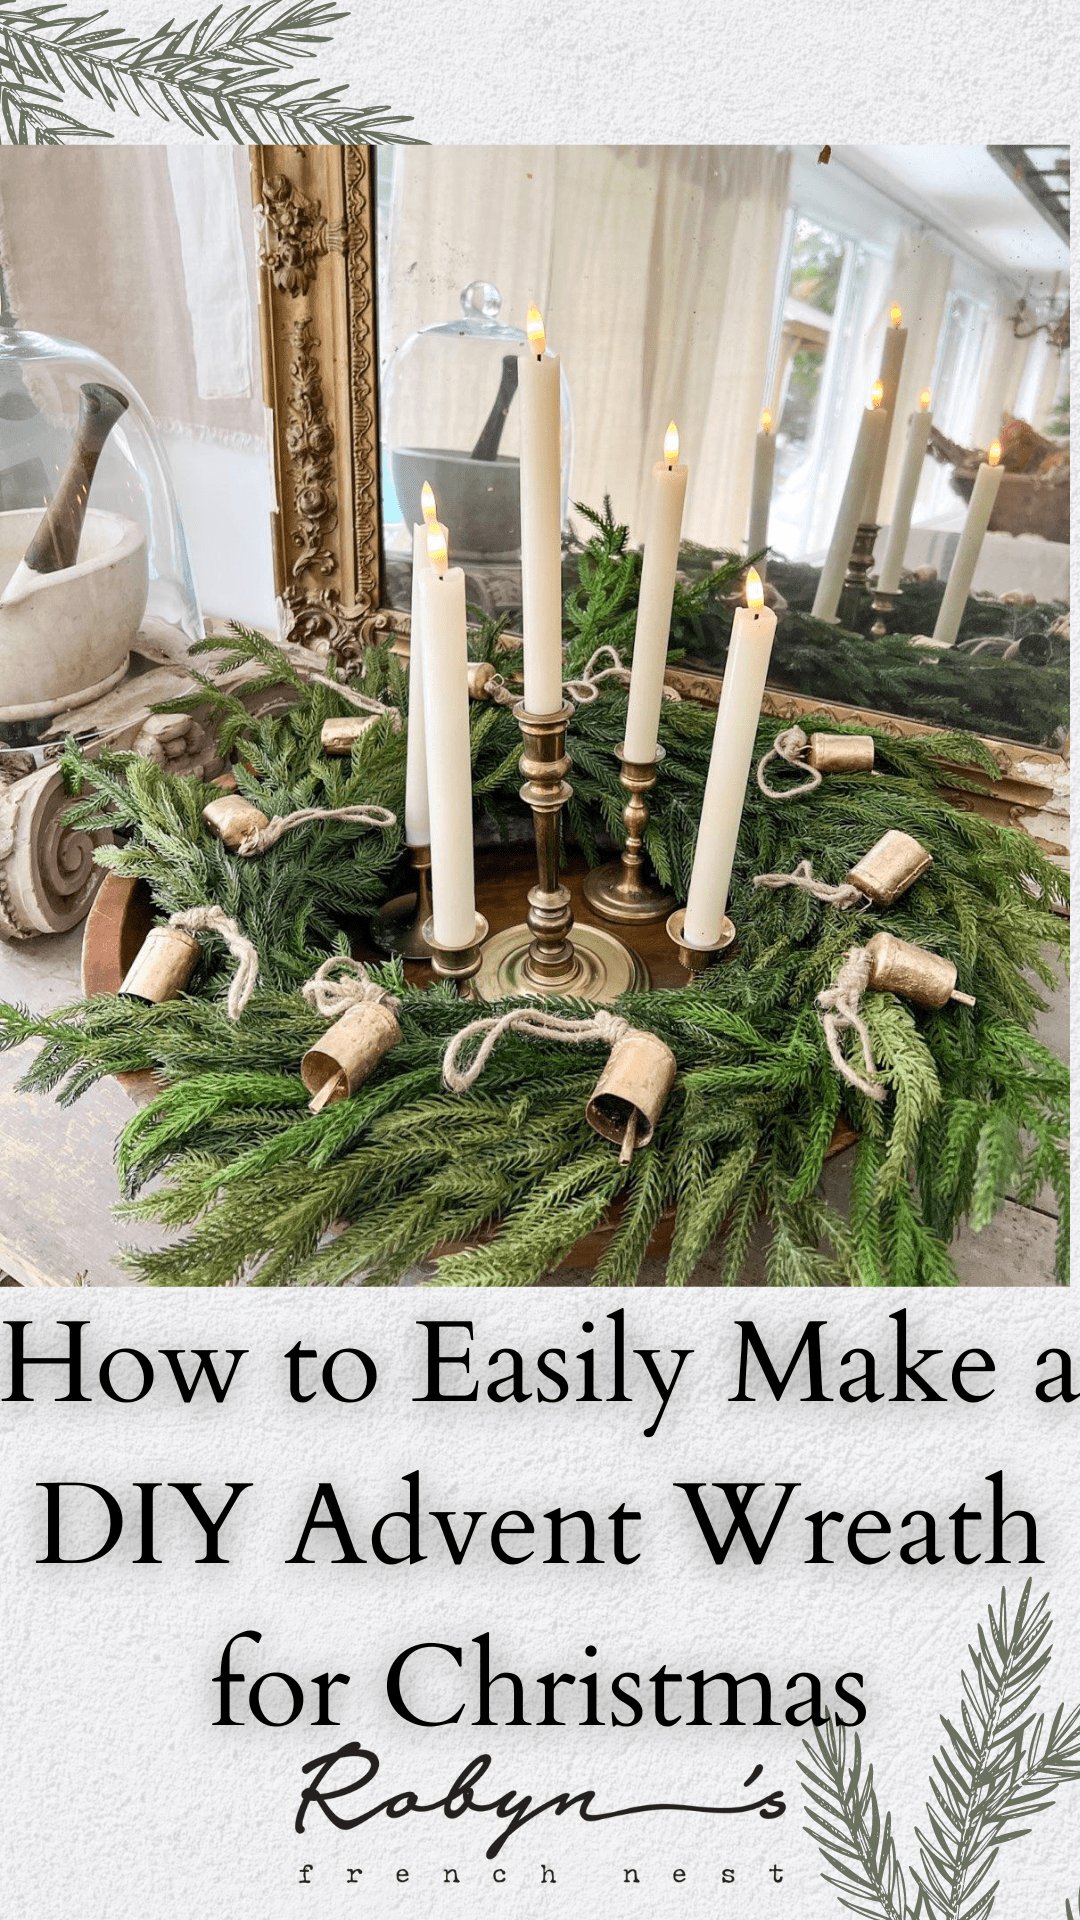 Easy Ideas for a Simple DIY Advent Wreath for Christmas